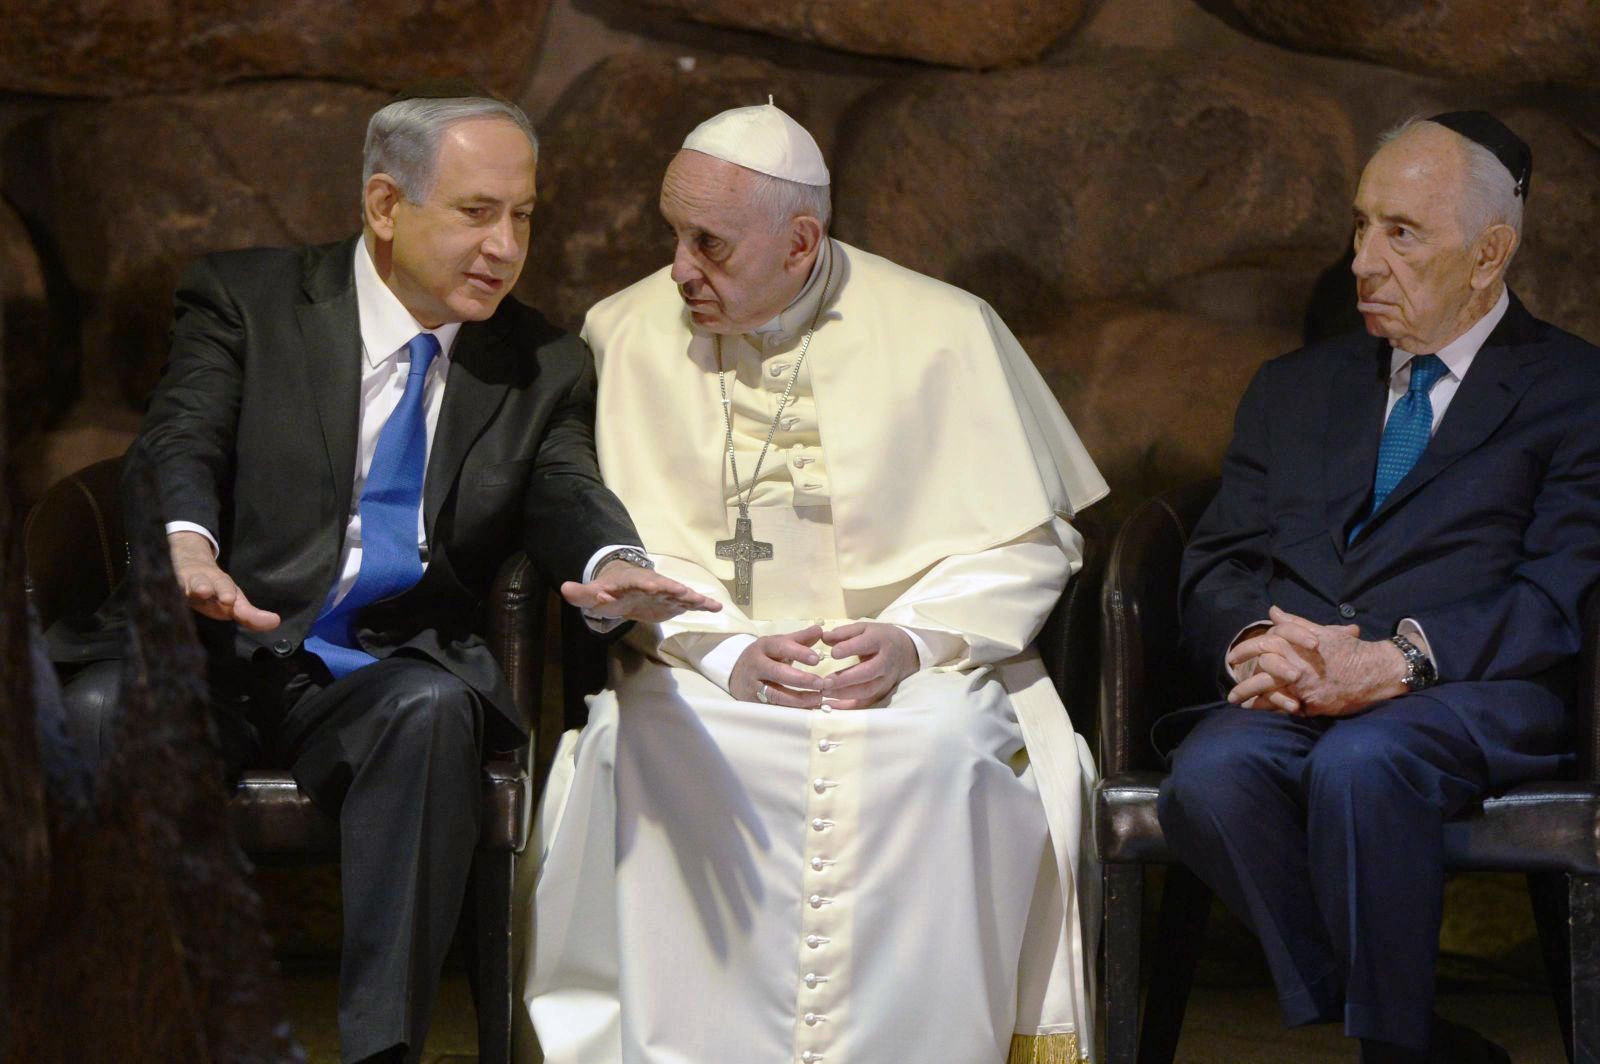 Римский еврей. Папа Франциск и Рокфеллер. Папа Франциск целует руку Рокфеллеру. Папа Римский целует руку Ротшильду. Биньямин Нетаньяху папа Римский.